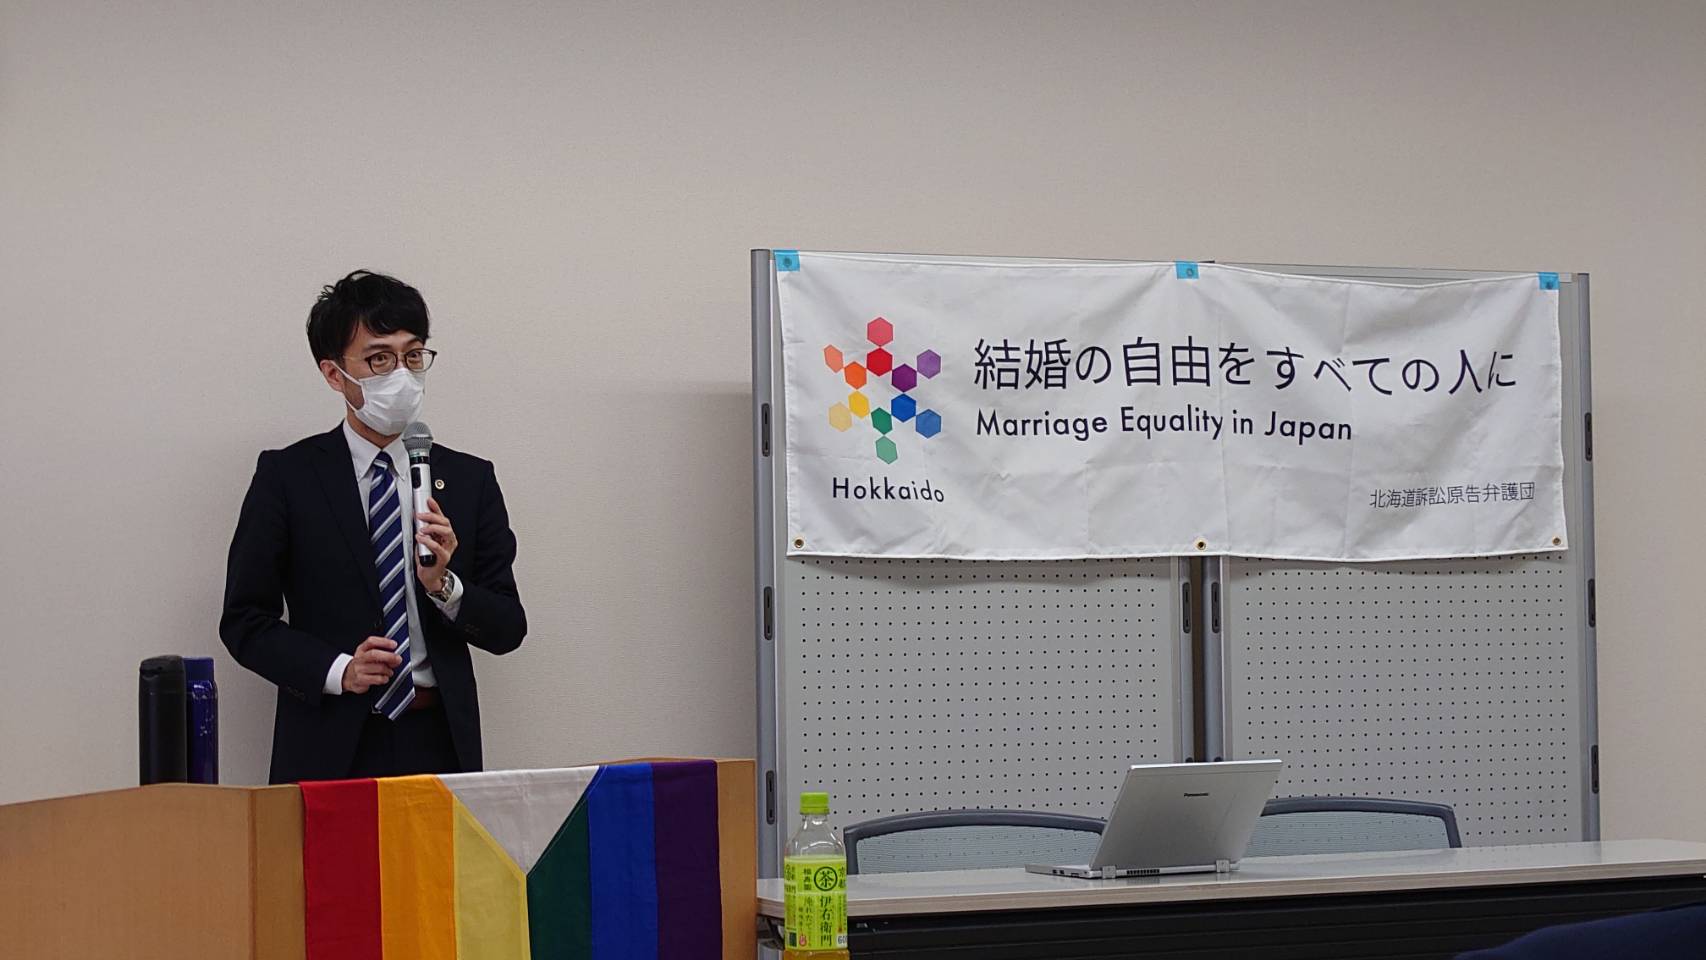 綱森史泰弁護士が、マイクを持ちながら、2022年11月30日に下されたと今日判決について話をしている。「結婚の自由をすべての人に Marriage Equality in Japan　北海道訴訟原告弁護団」と書かれた旗が掲げられている。